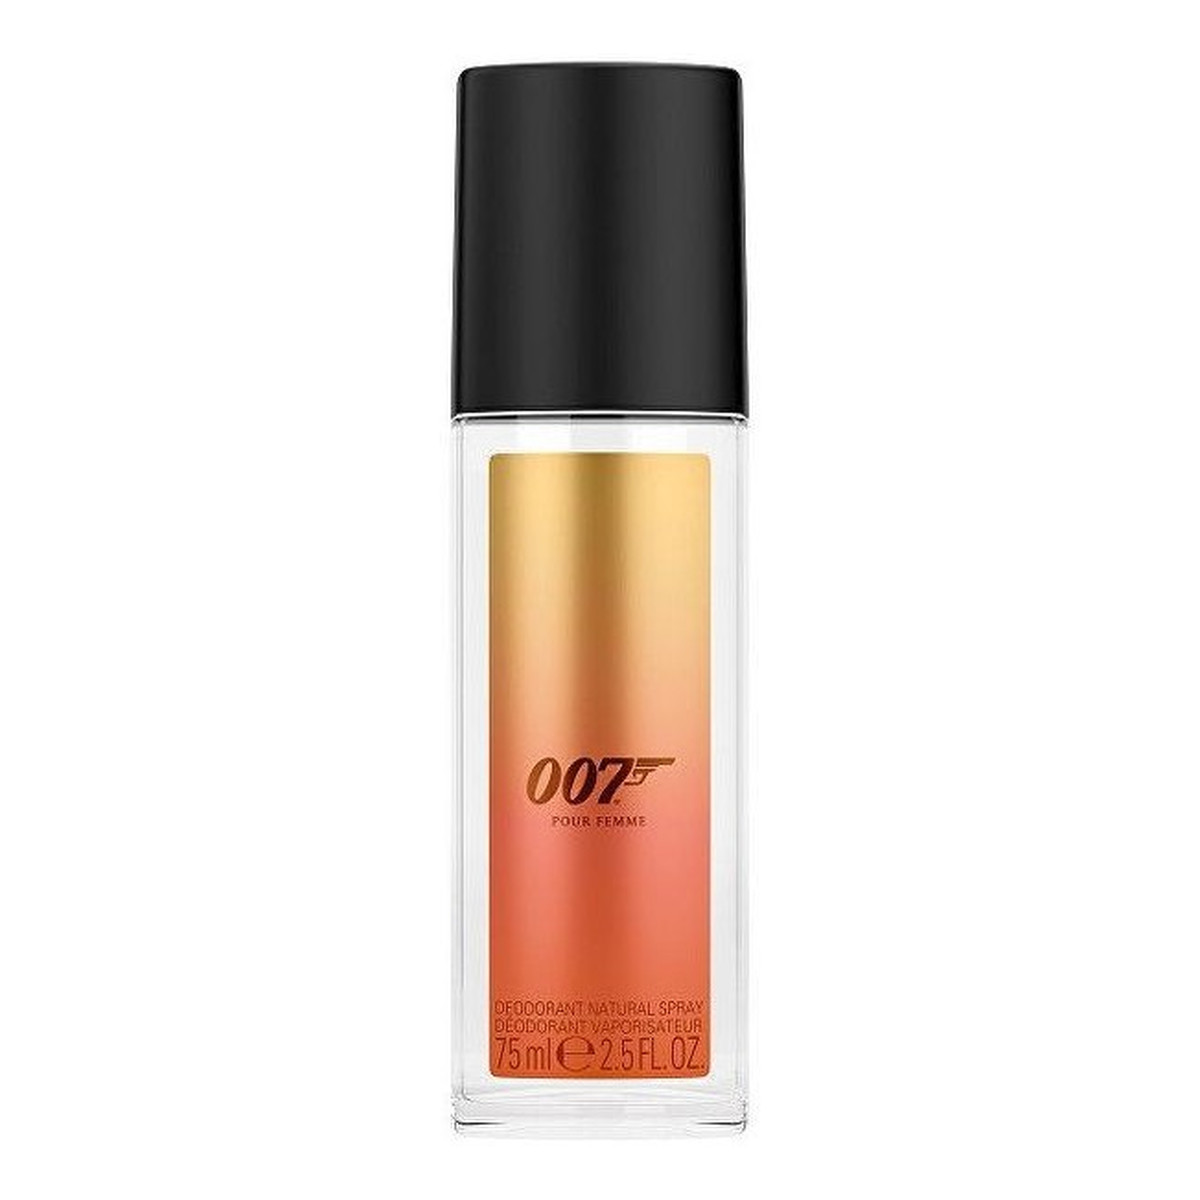 James Bond 007 Pour Femme Dezodorant 75ml